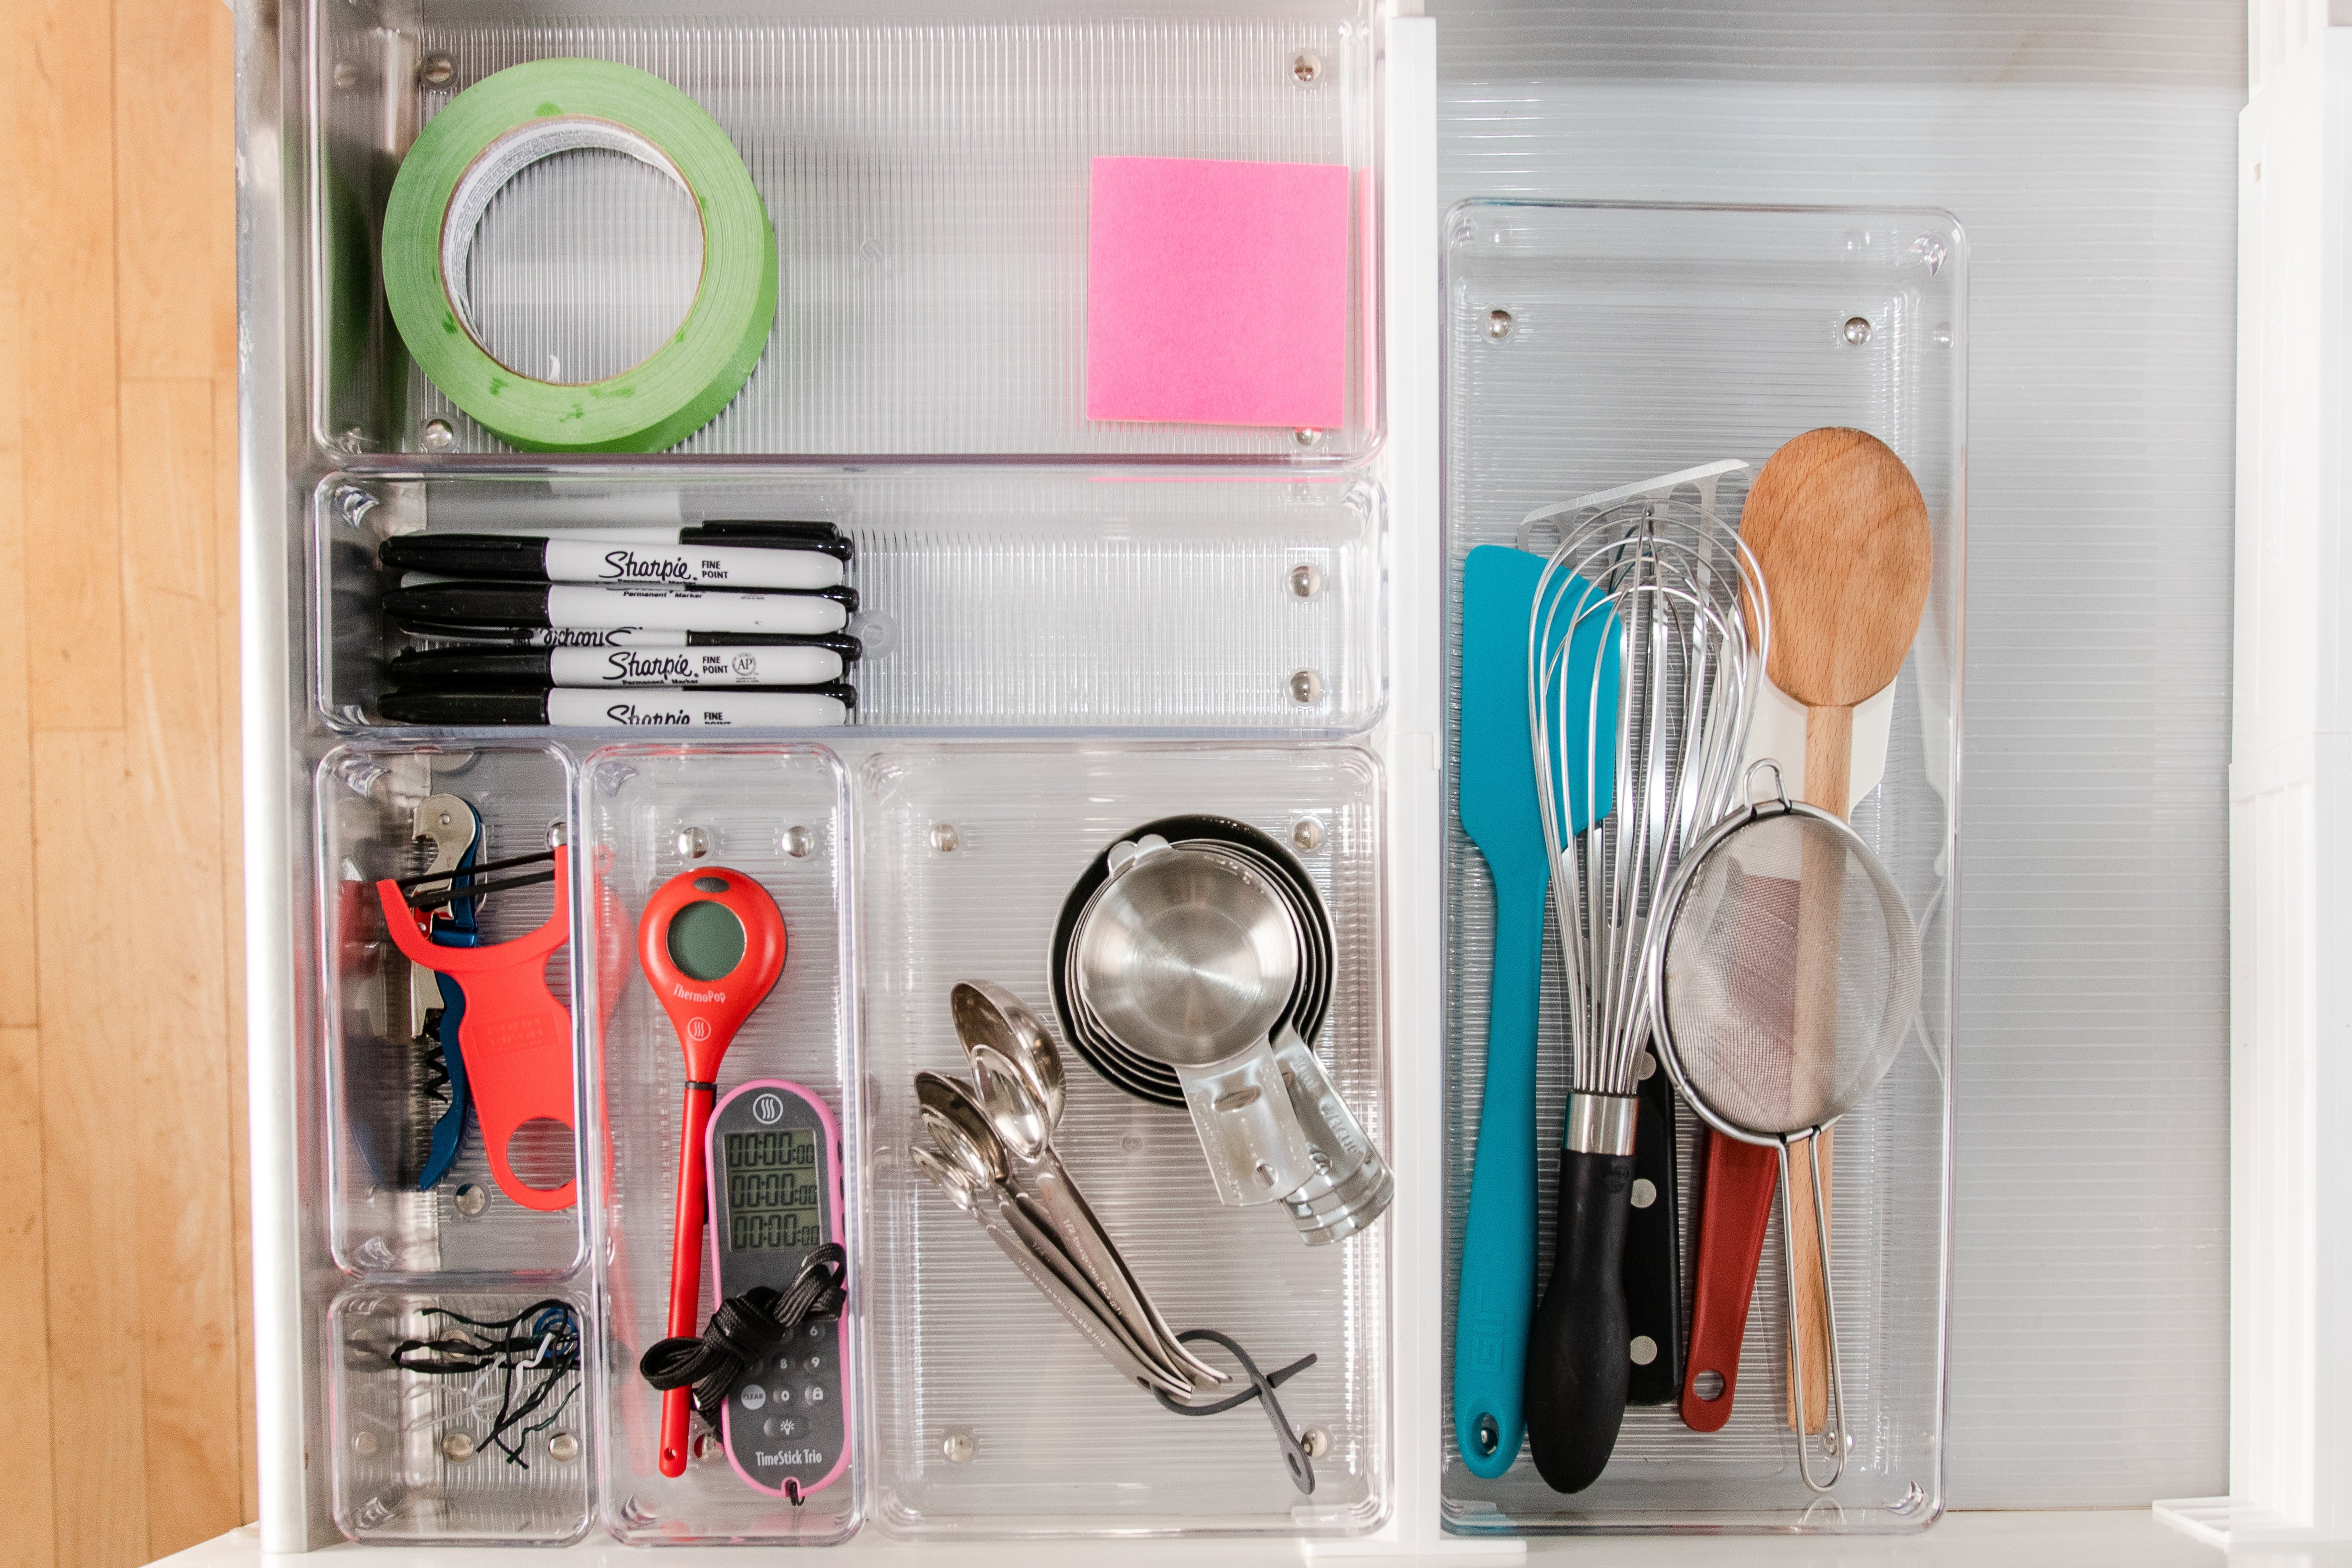 Assorted kitchen tools in the InterDesign organizer